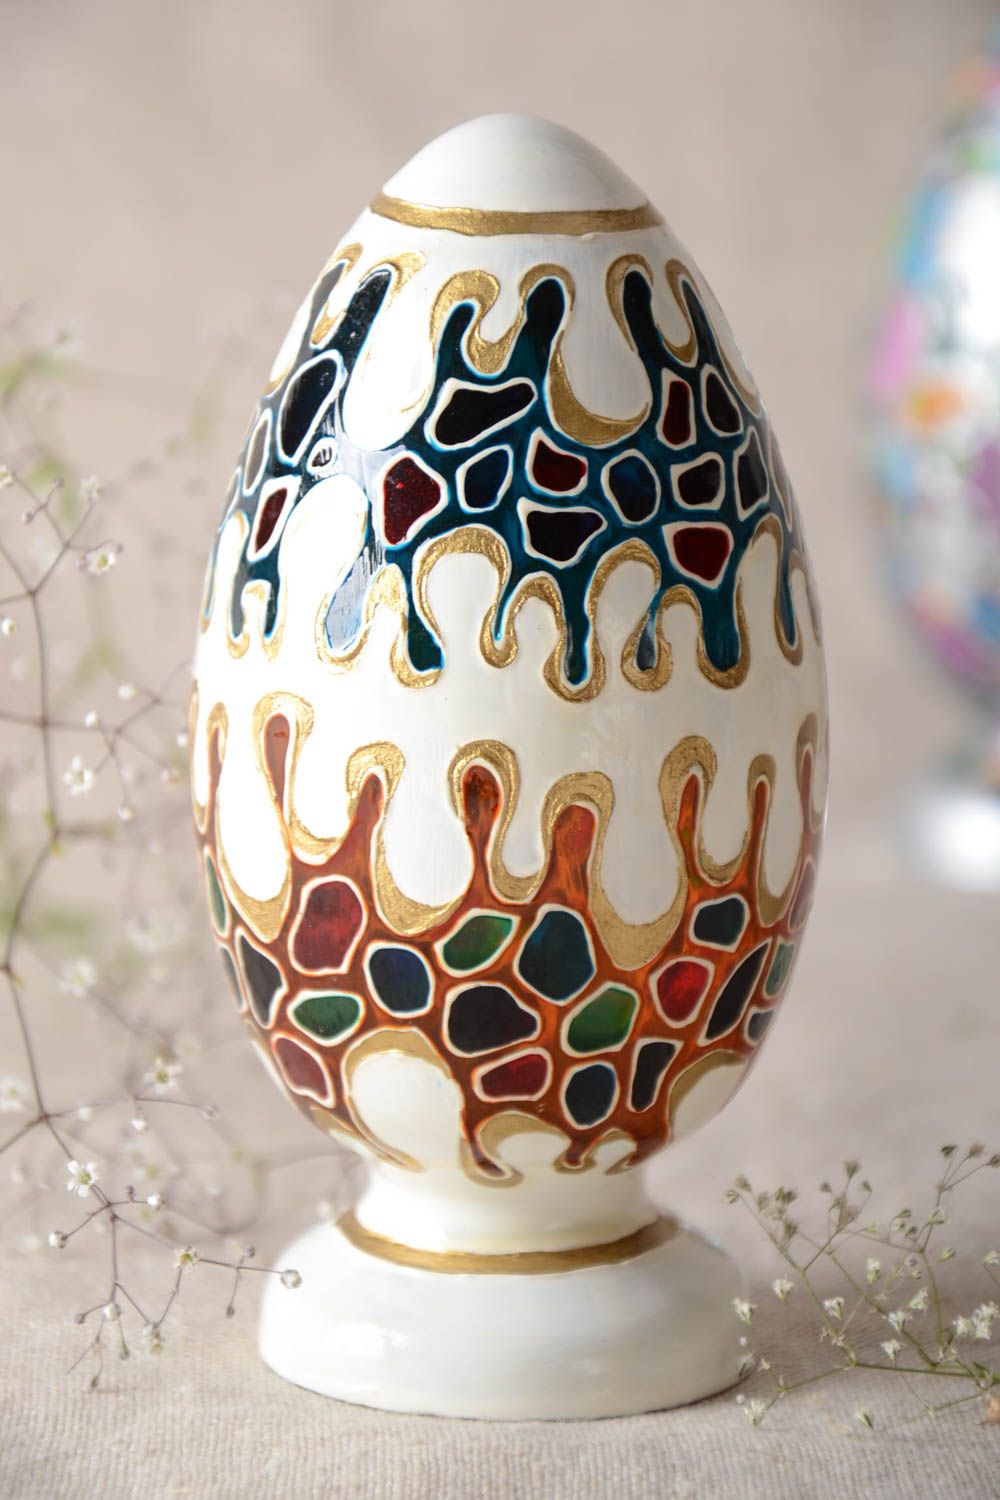 Оригинальное пасхальное яйцо из чешского стекла с росписью ручной работы фото 1